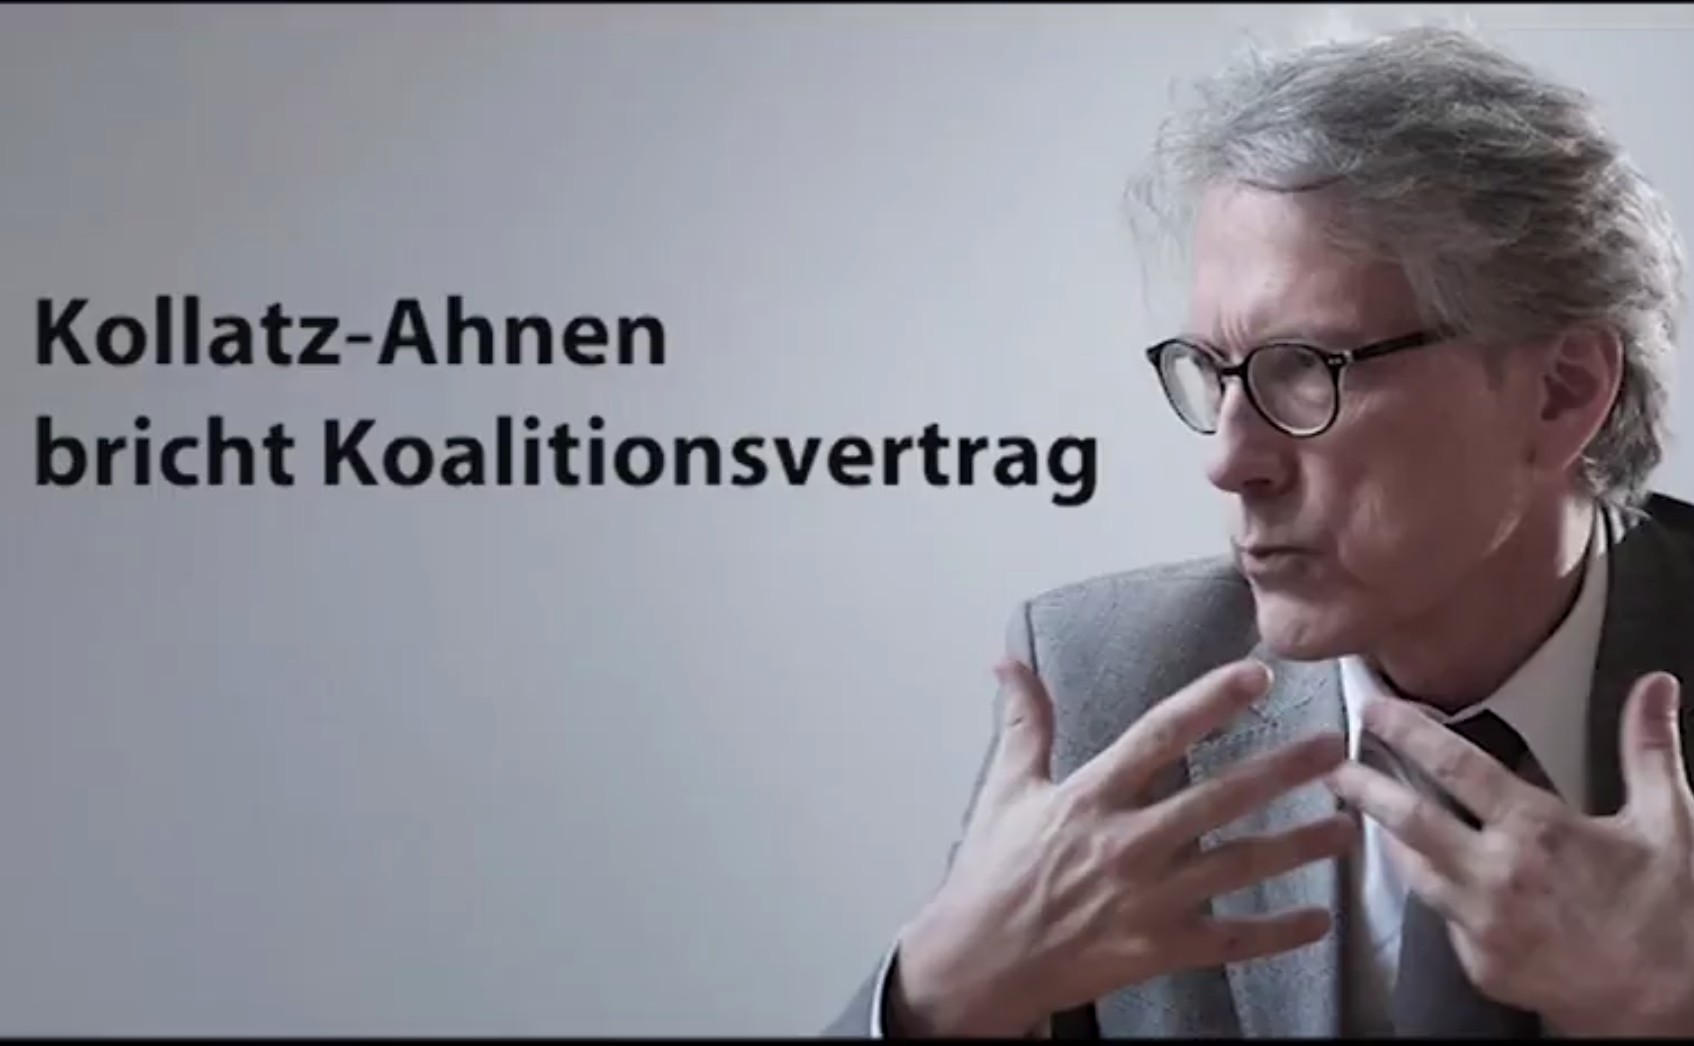 [Video] VSG-Streik: Wie Kollatz-Ahnen den Koalitionsvertrag bricht